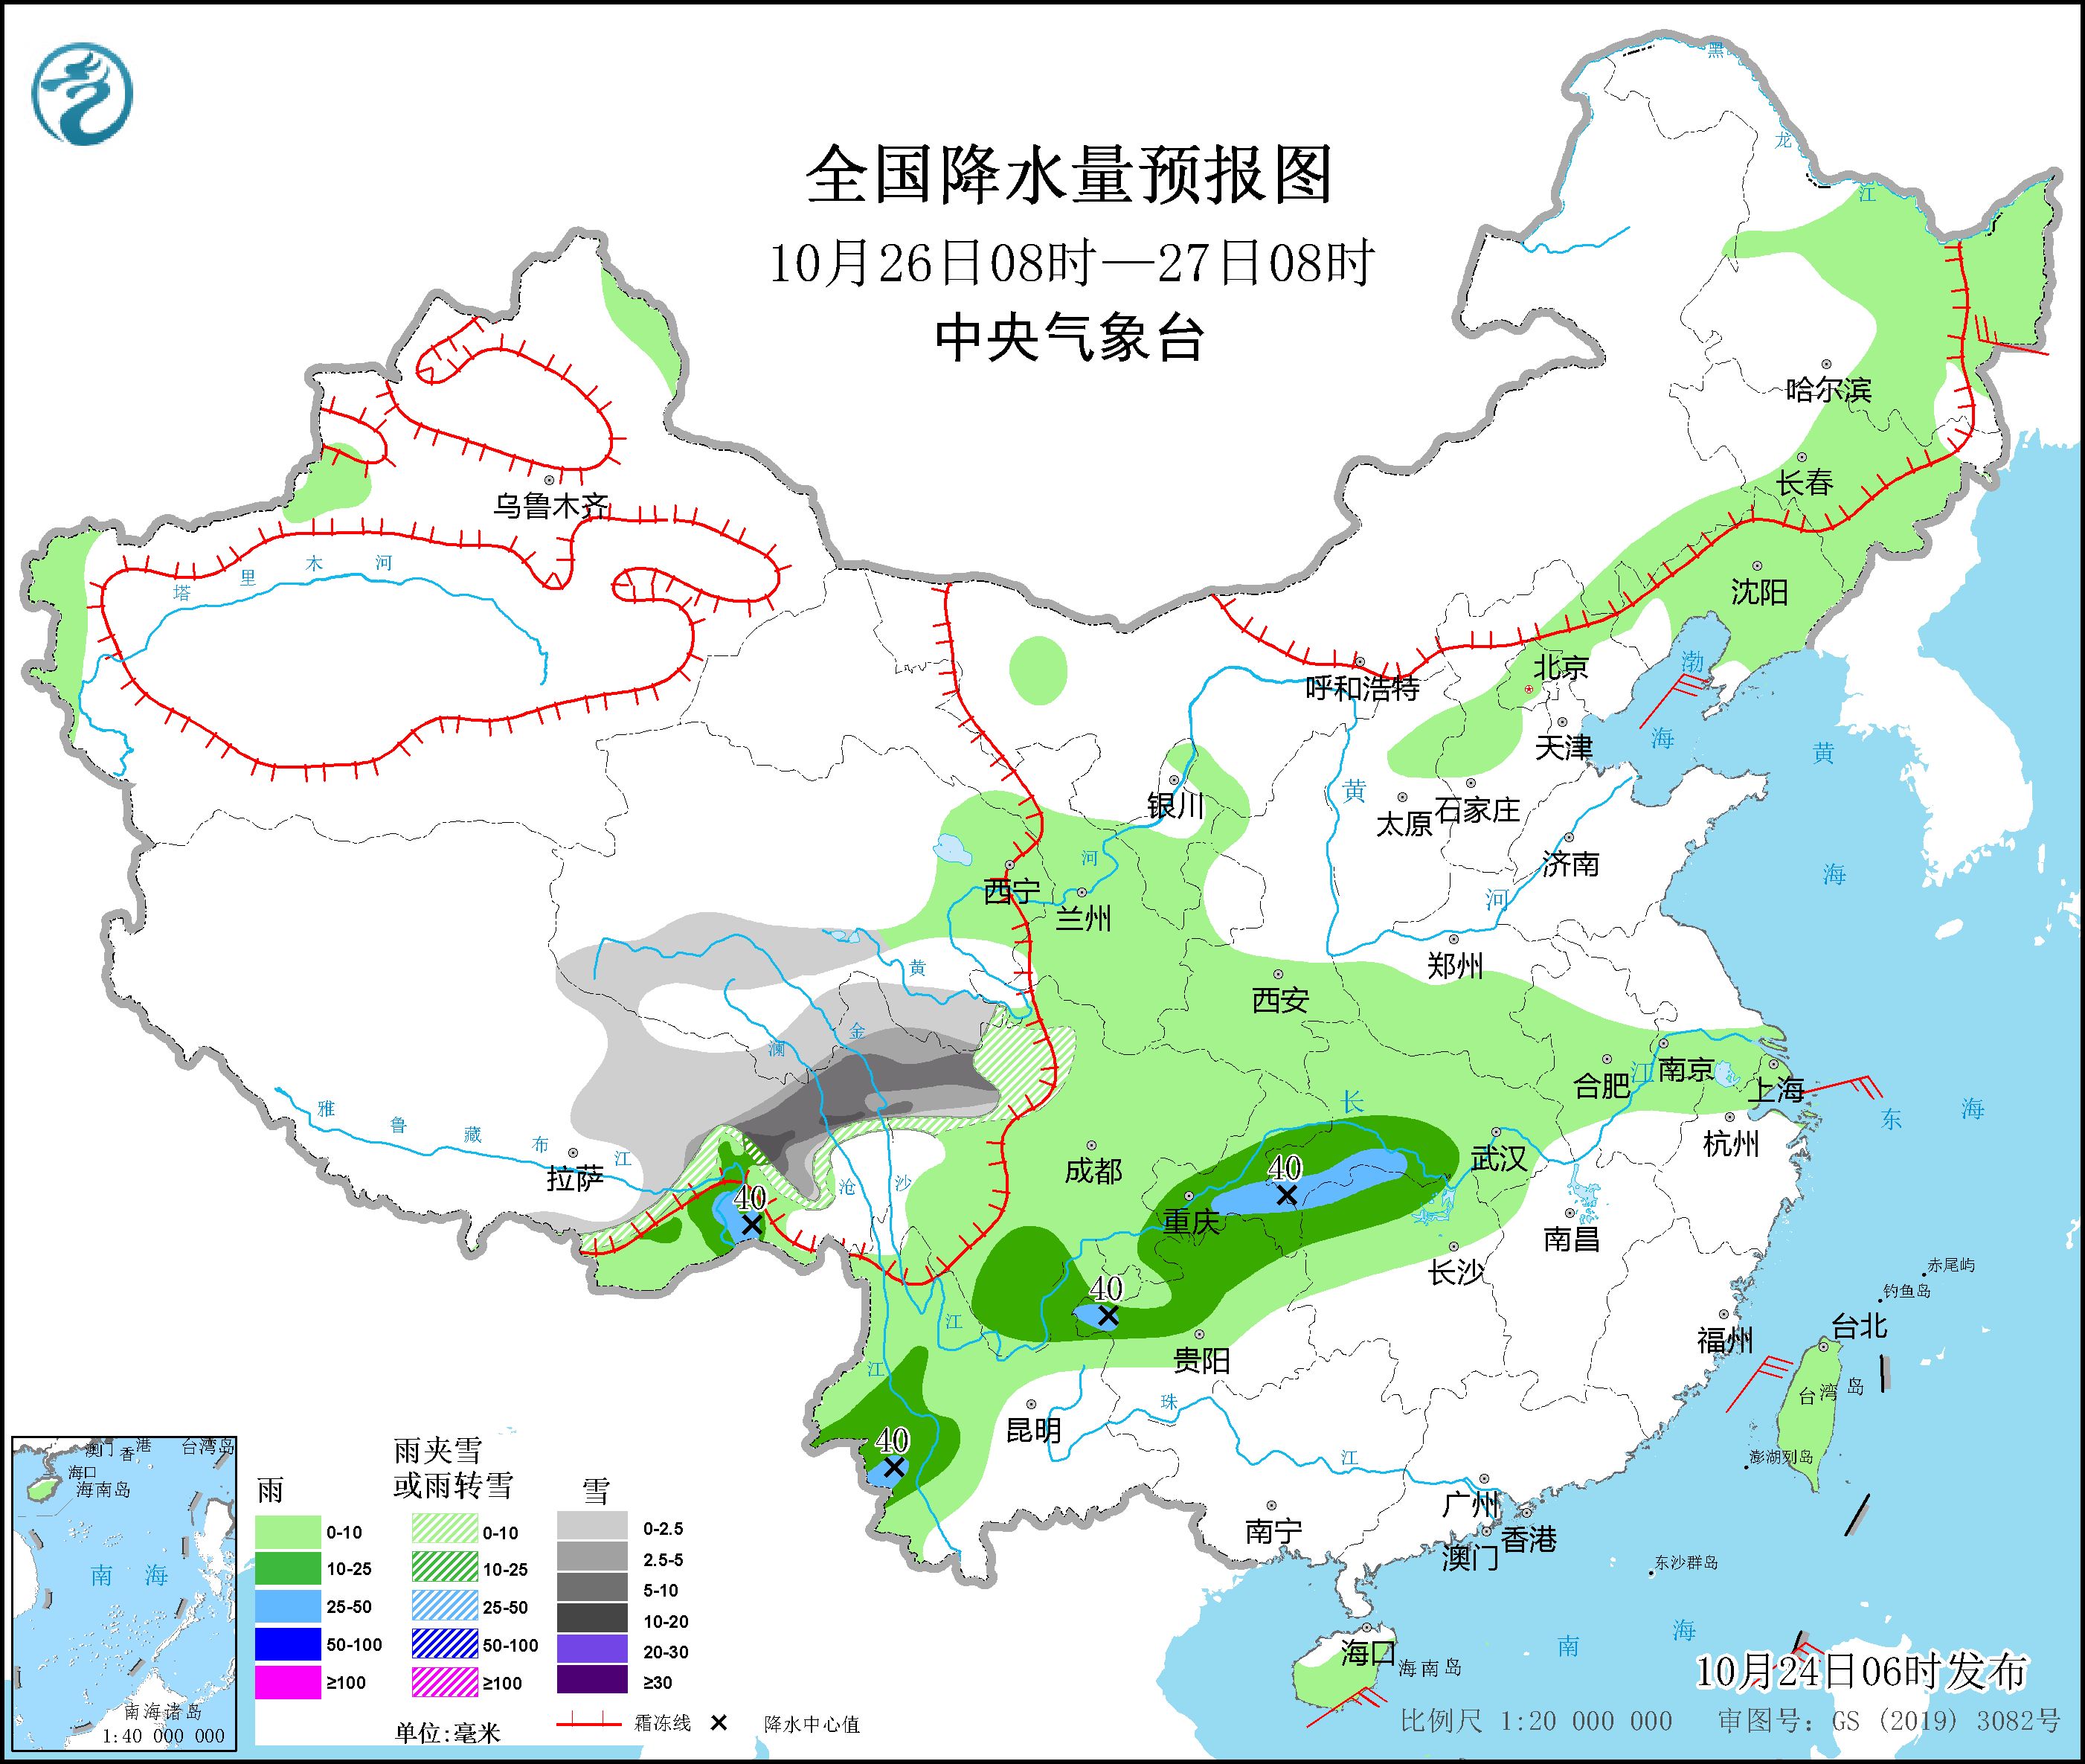 青藏高原东部将有较强雨雪天气 海南岛将有较强风雨天气